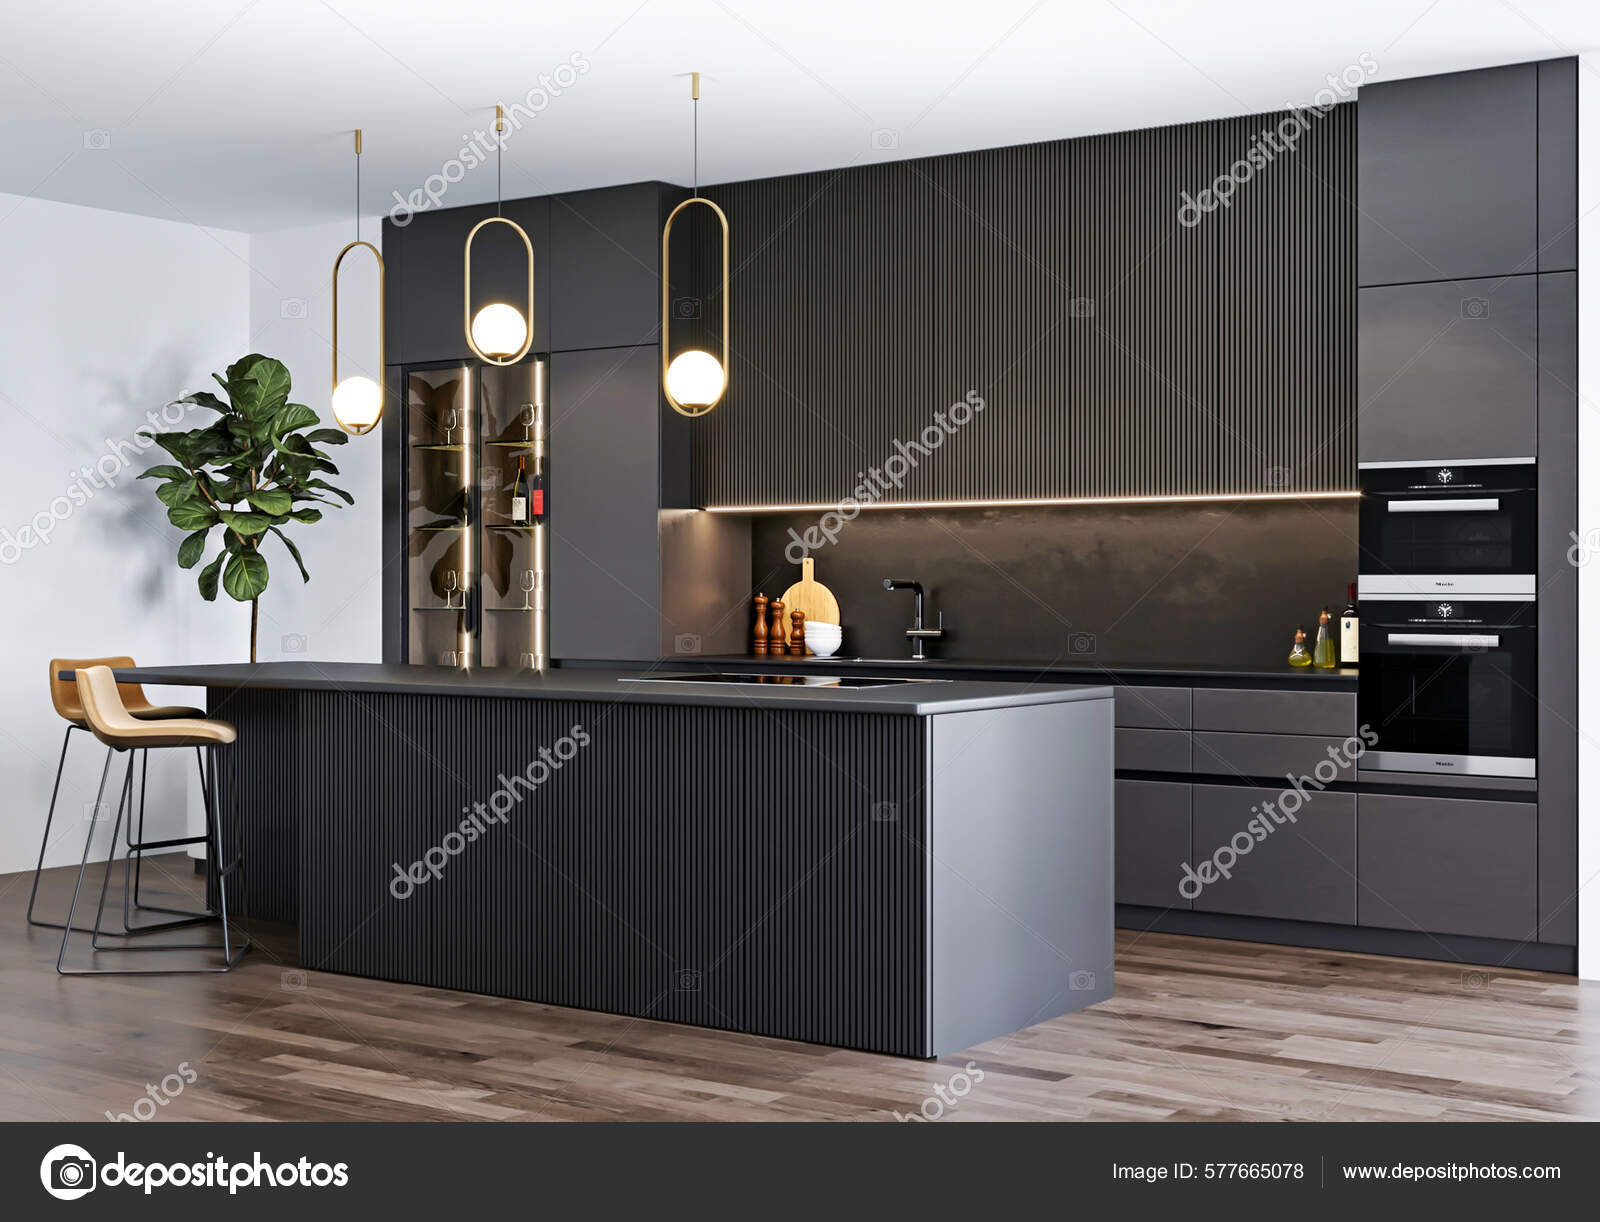 Minimalist Room Sleek 3d Render Of Black Kitchen With Modern